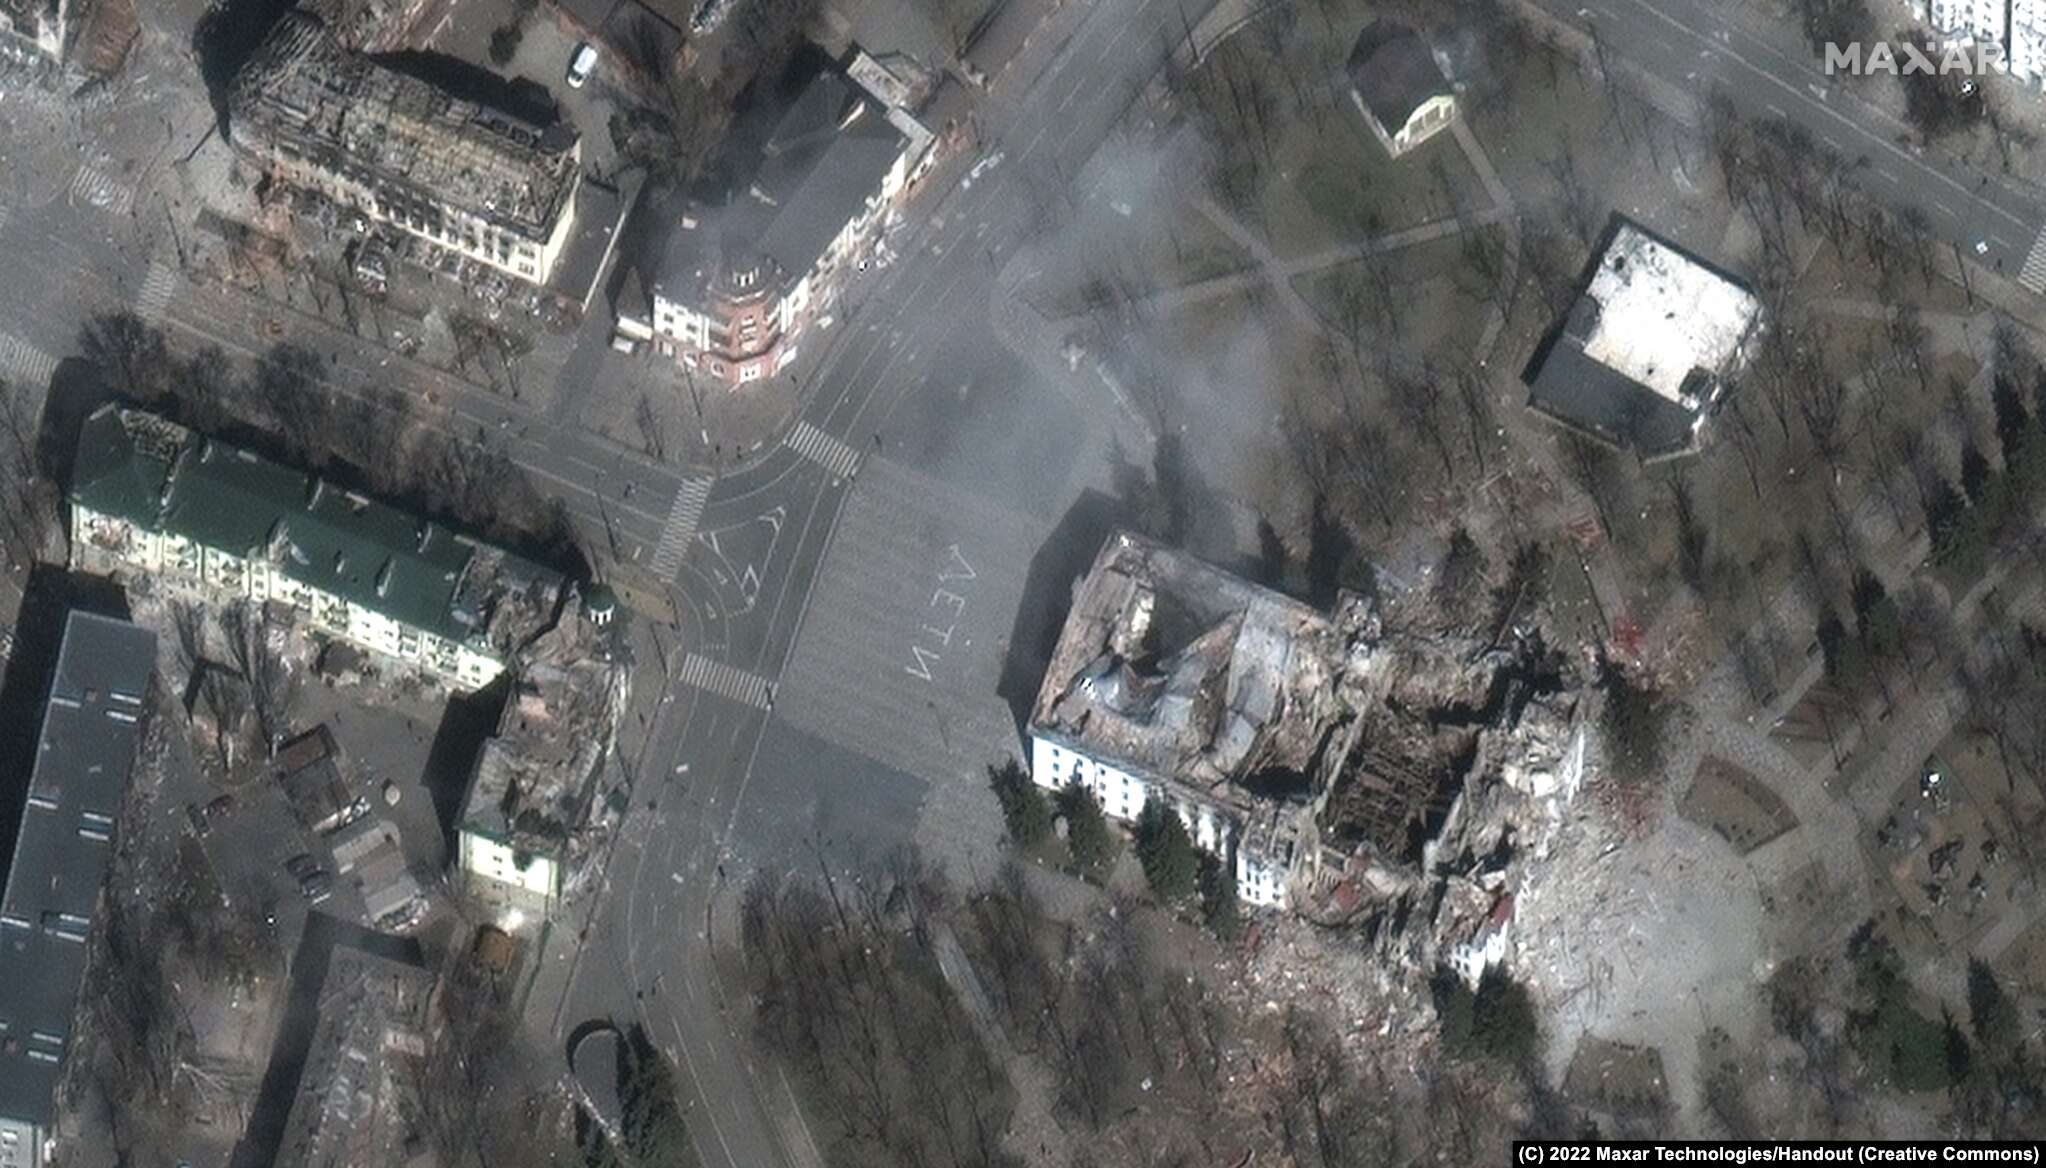 馬立波市內的歌劇院被炸， 實際傷亡數字未知，當地政府估計有超過300人死亡。 歌劇院門外仍可看到用俄文寫上的兒童字句。